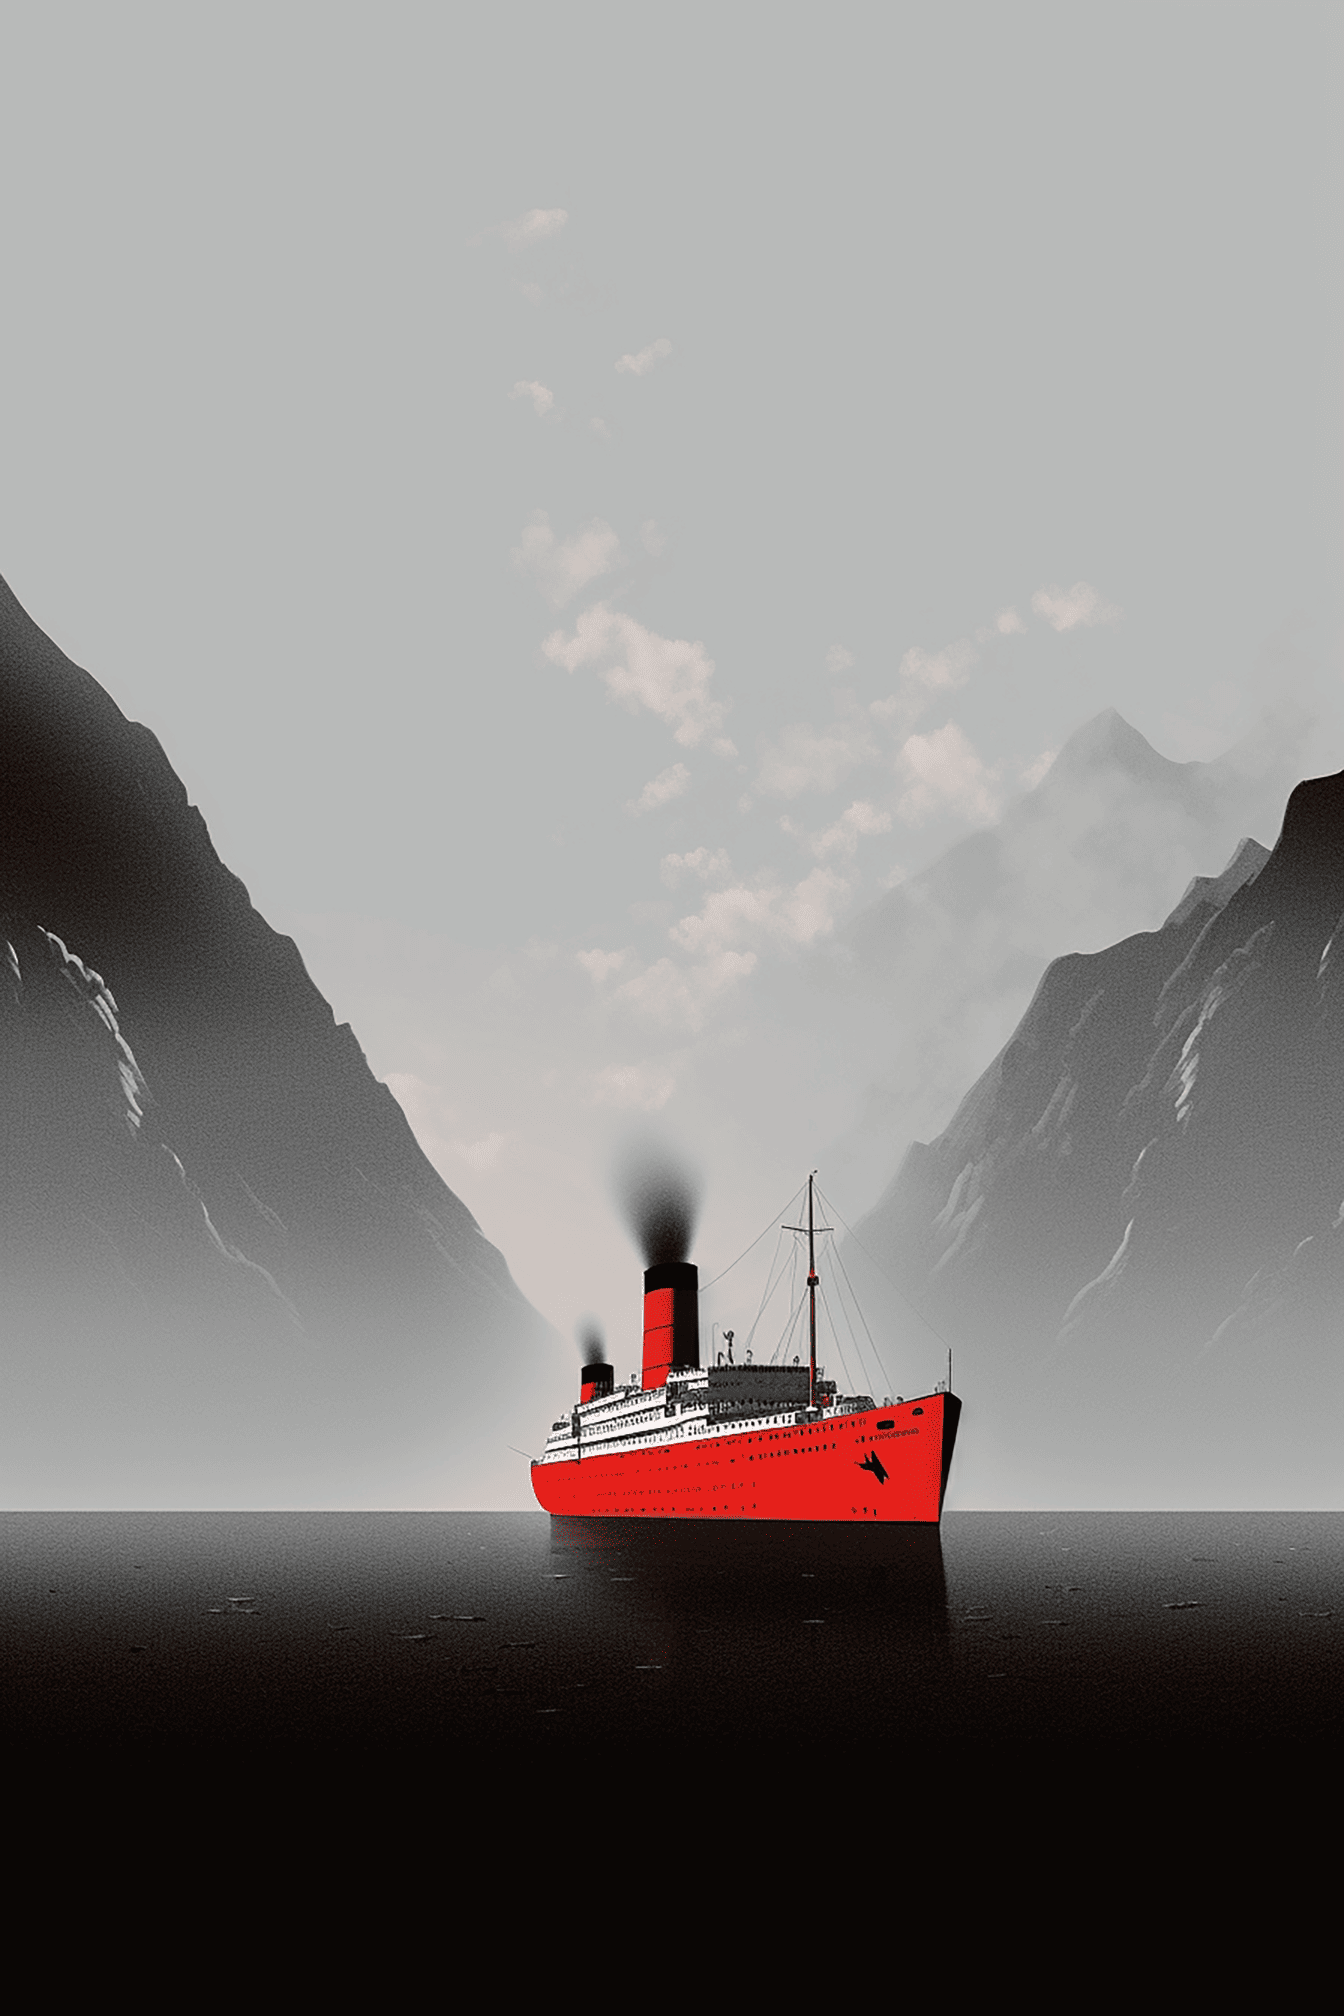 Ilustração gráfica do navio de cruzeiro vermelho escuro na baía